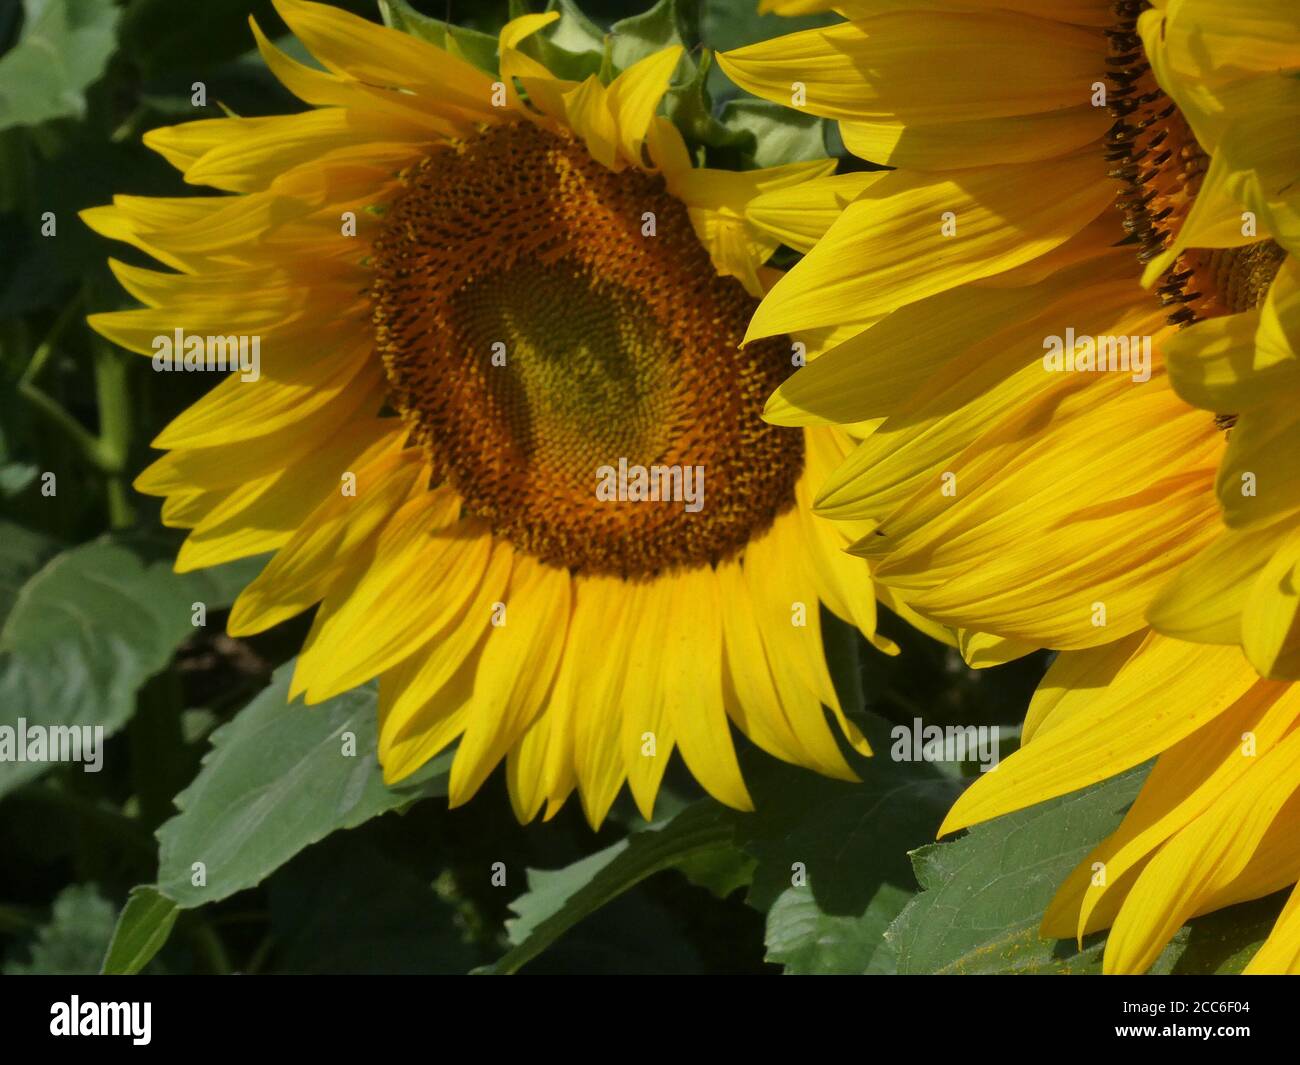 Sunflower field in bloom. Stock Photo